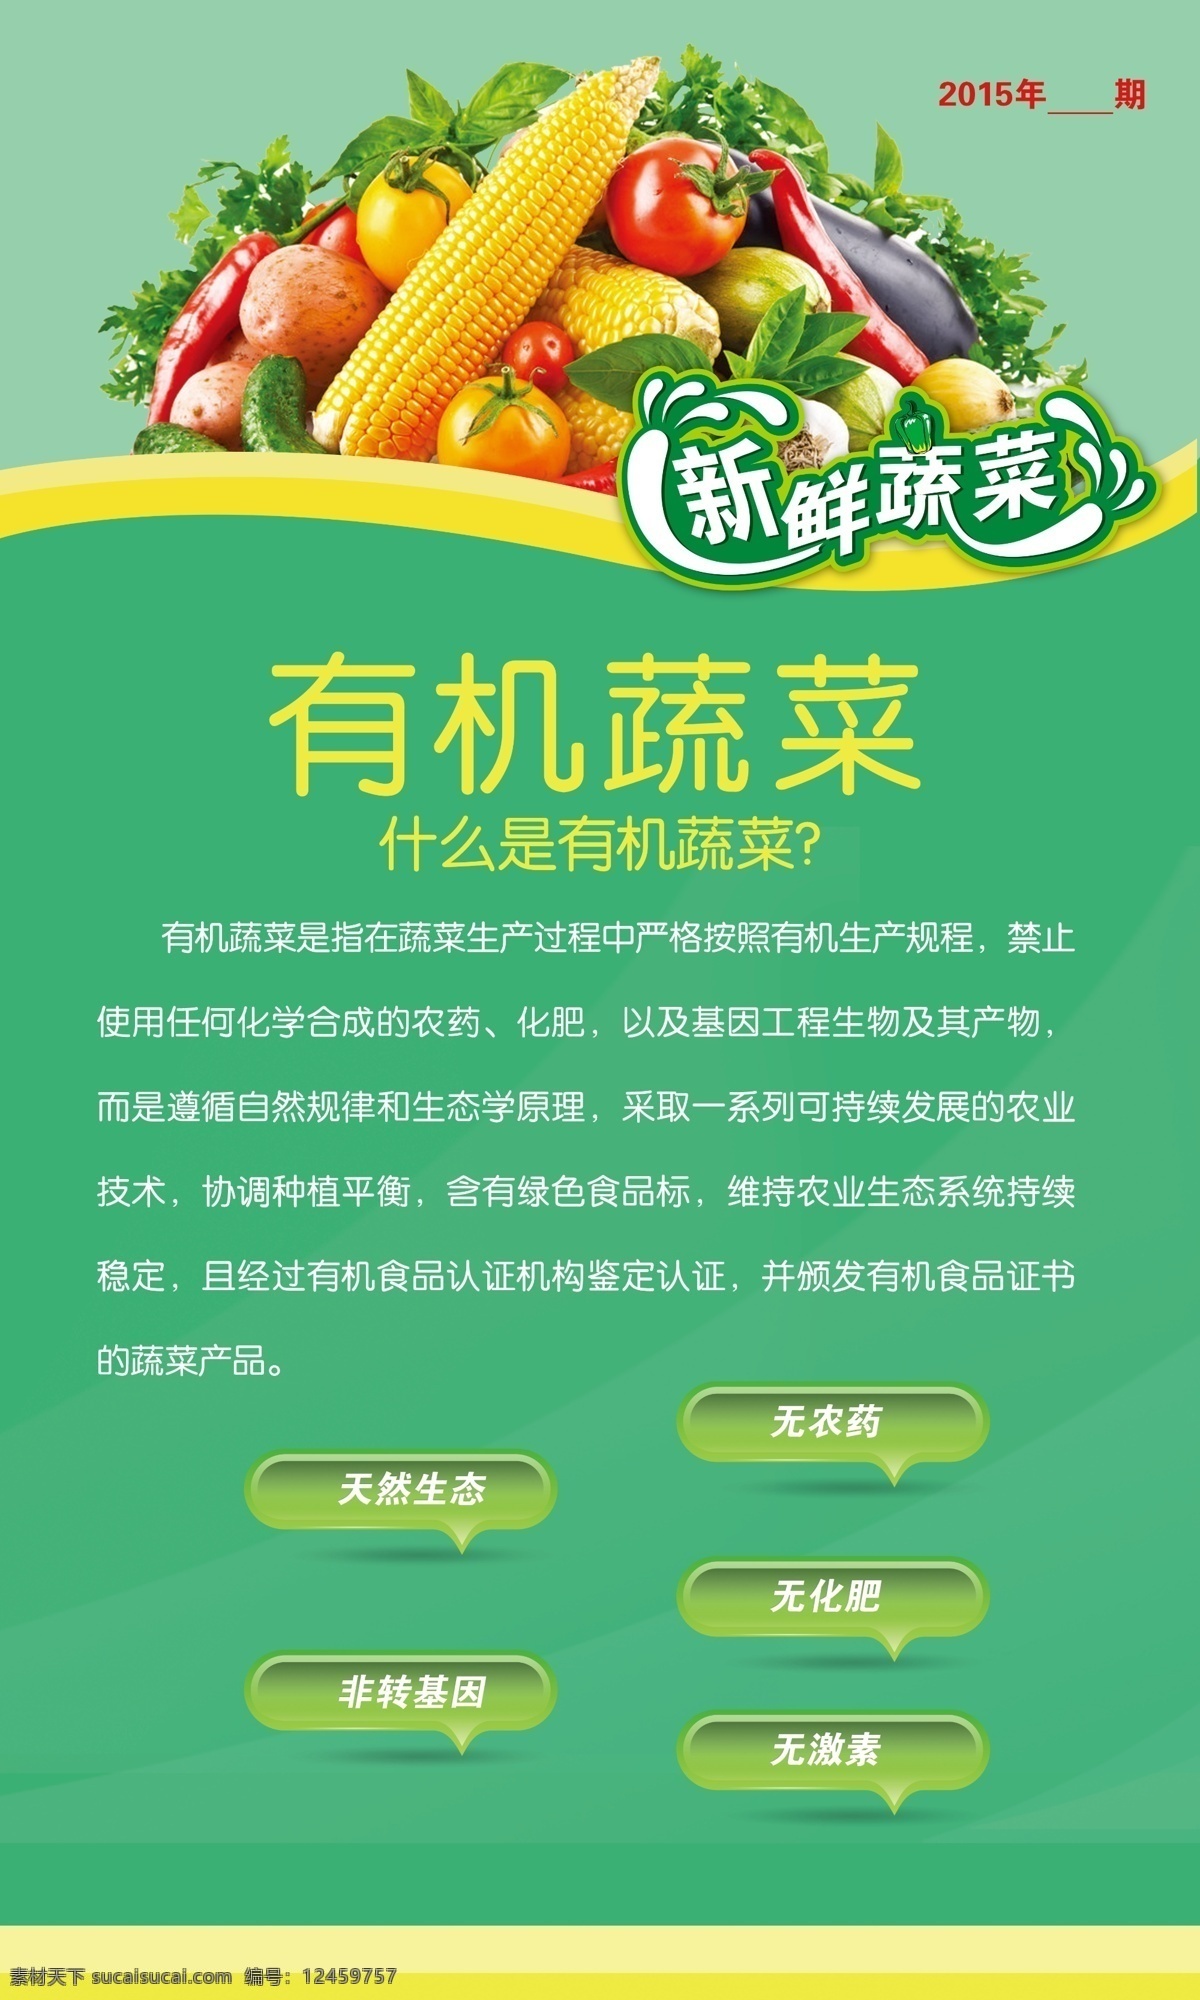 有机 蔬菜 宣传栏 水果 有机蔬菜 展板 原创设计 原创海报